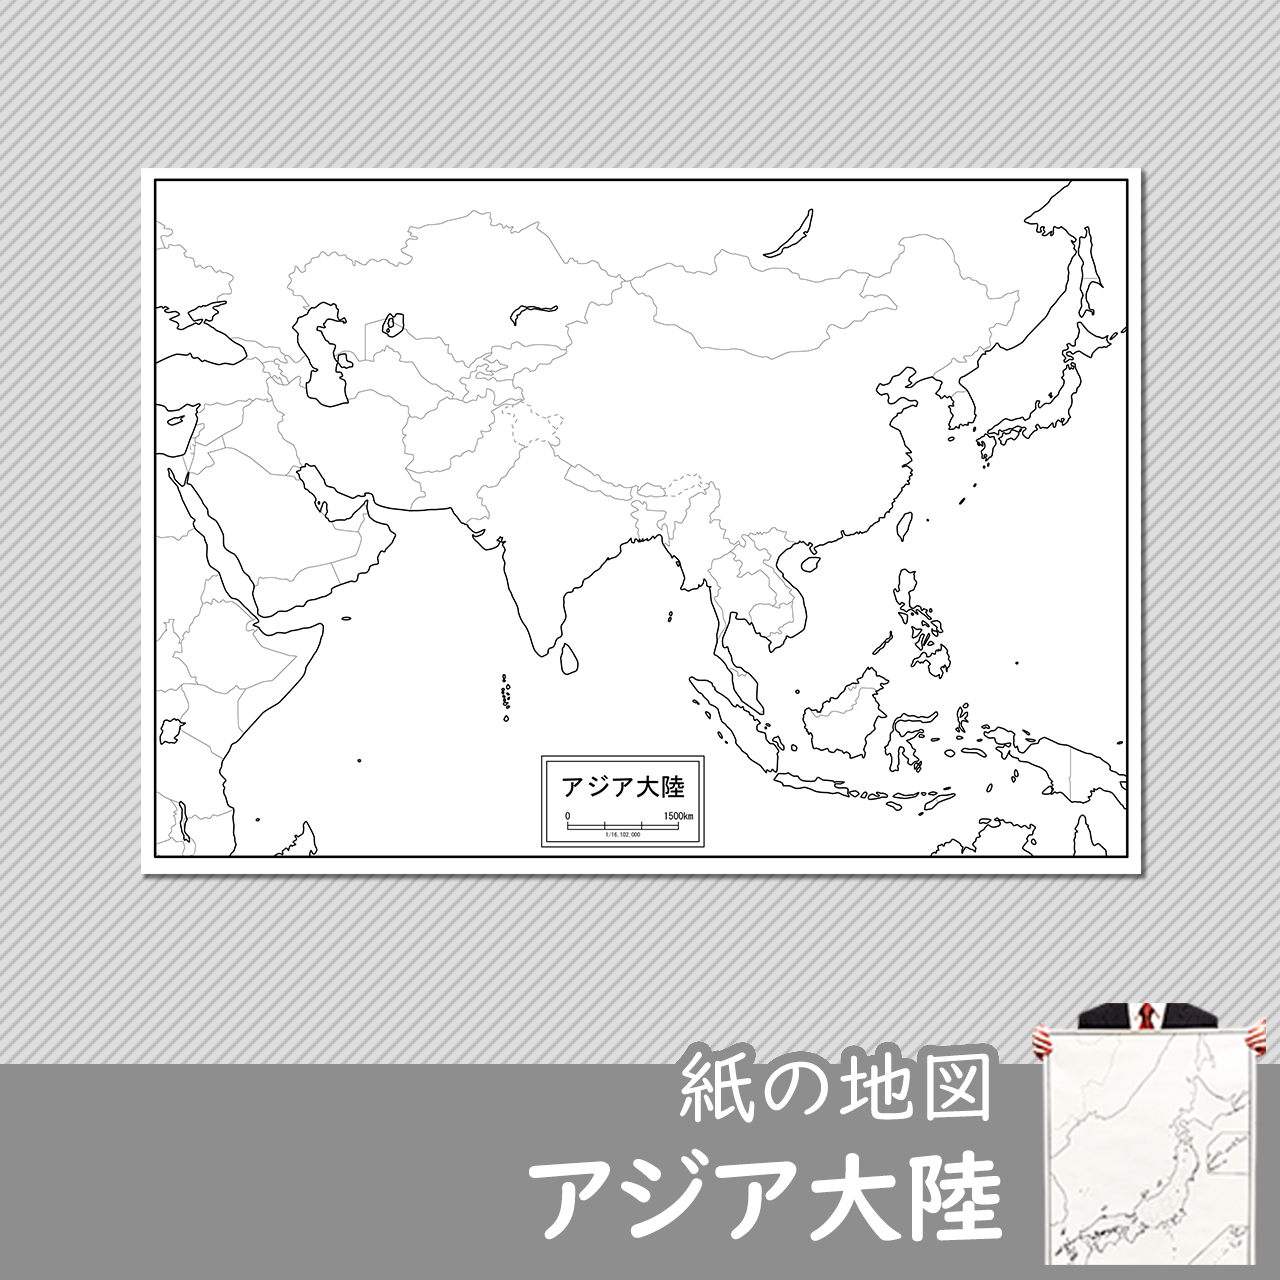 アジア大陸（拡大）の紙の白地図のサムネイル